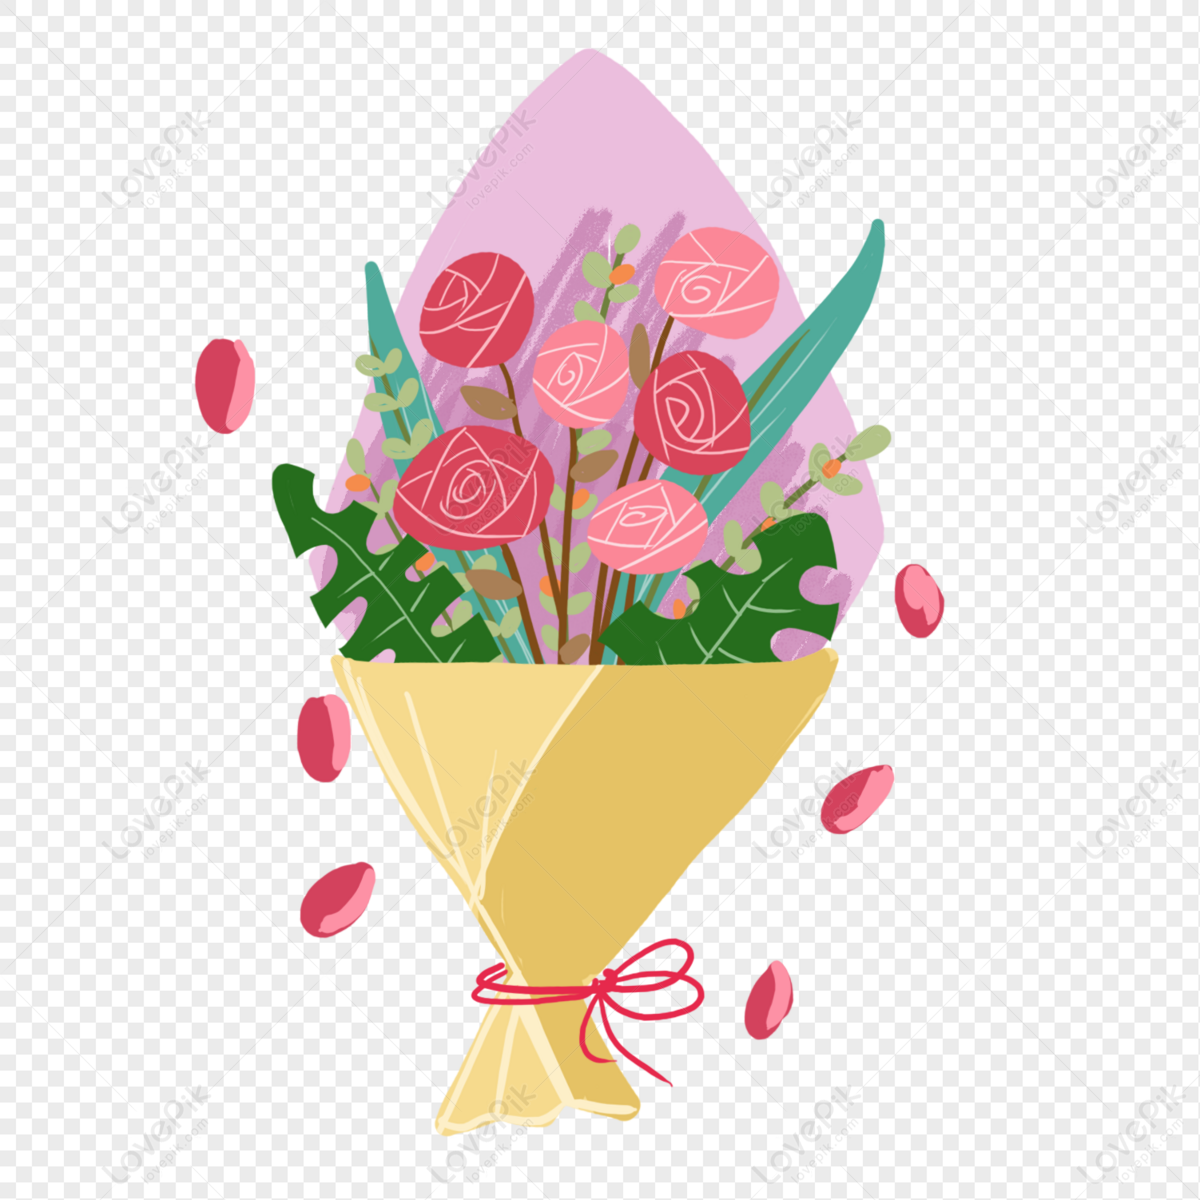 Bó hoa hồng là món quà không thể thiếu trong ngày lễ tình nhân hoặc bất kỳ ngày kỷ niệm nào. Và điều đặc biệt hơn, một bó hoa hồng luôn tạo nên sự tươi vui và ý nghĩa. Hãy xem hình ảnh để cảm nhận vẻ đẹp lãng mạn của một bó hoa hồng đầy sắc màu!